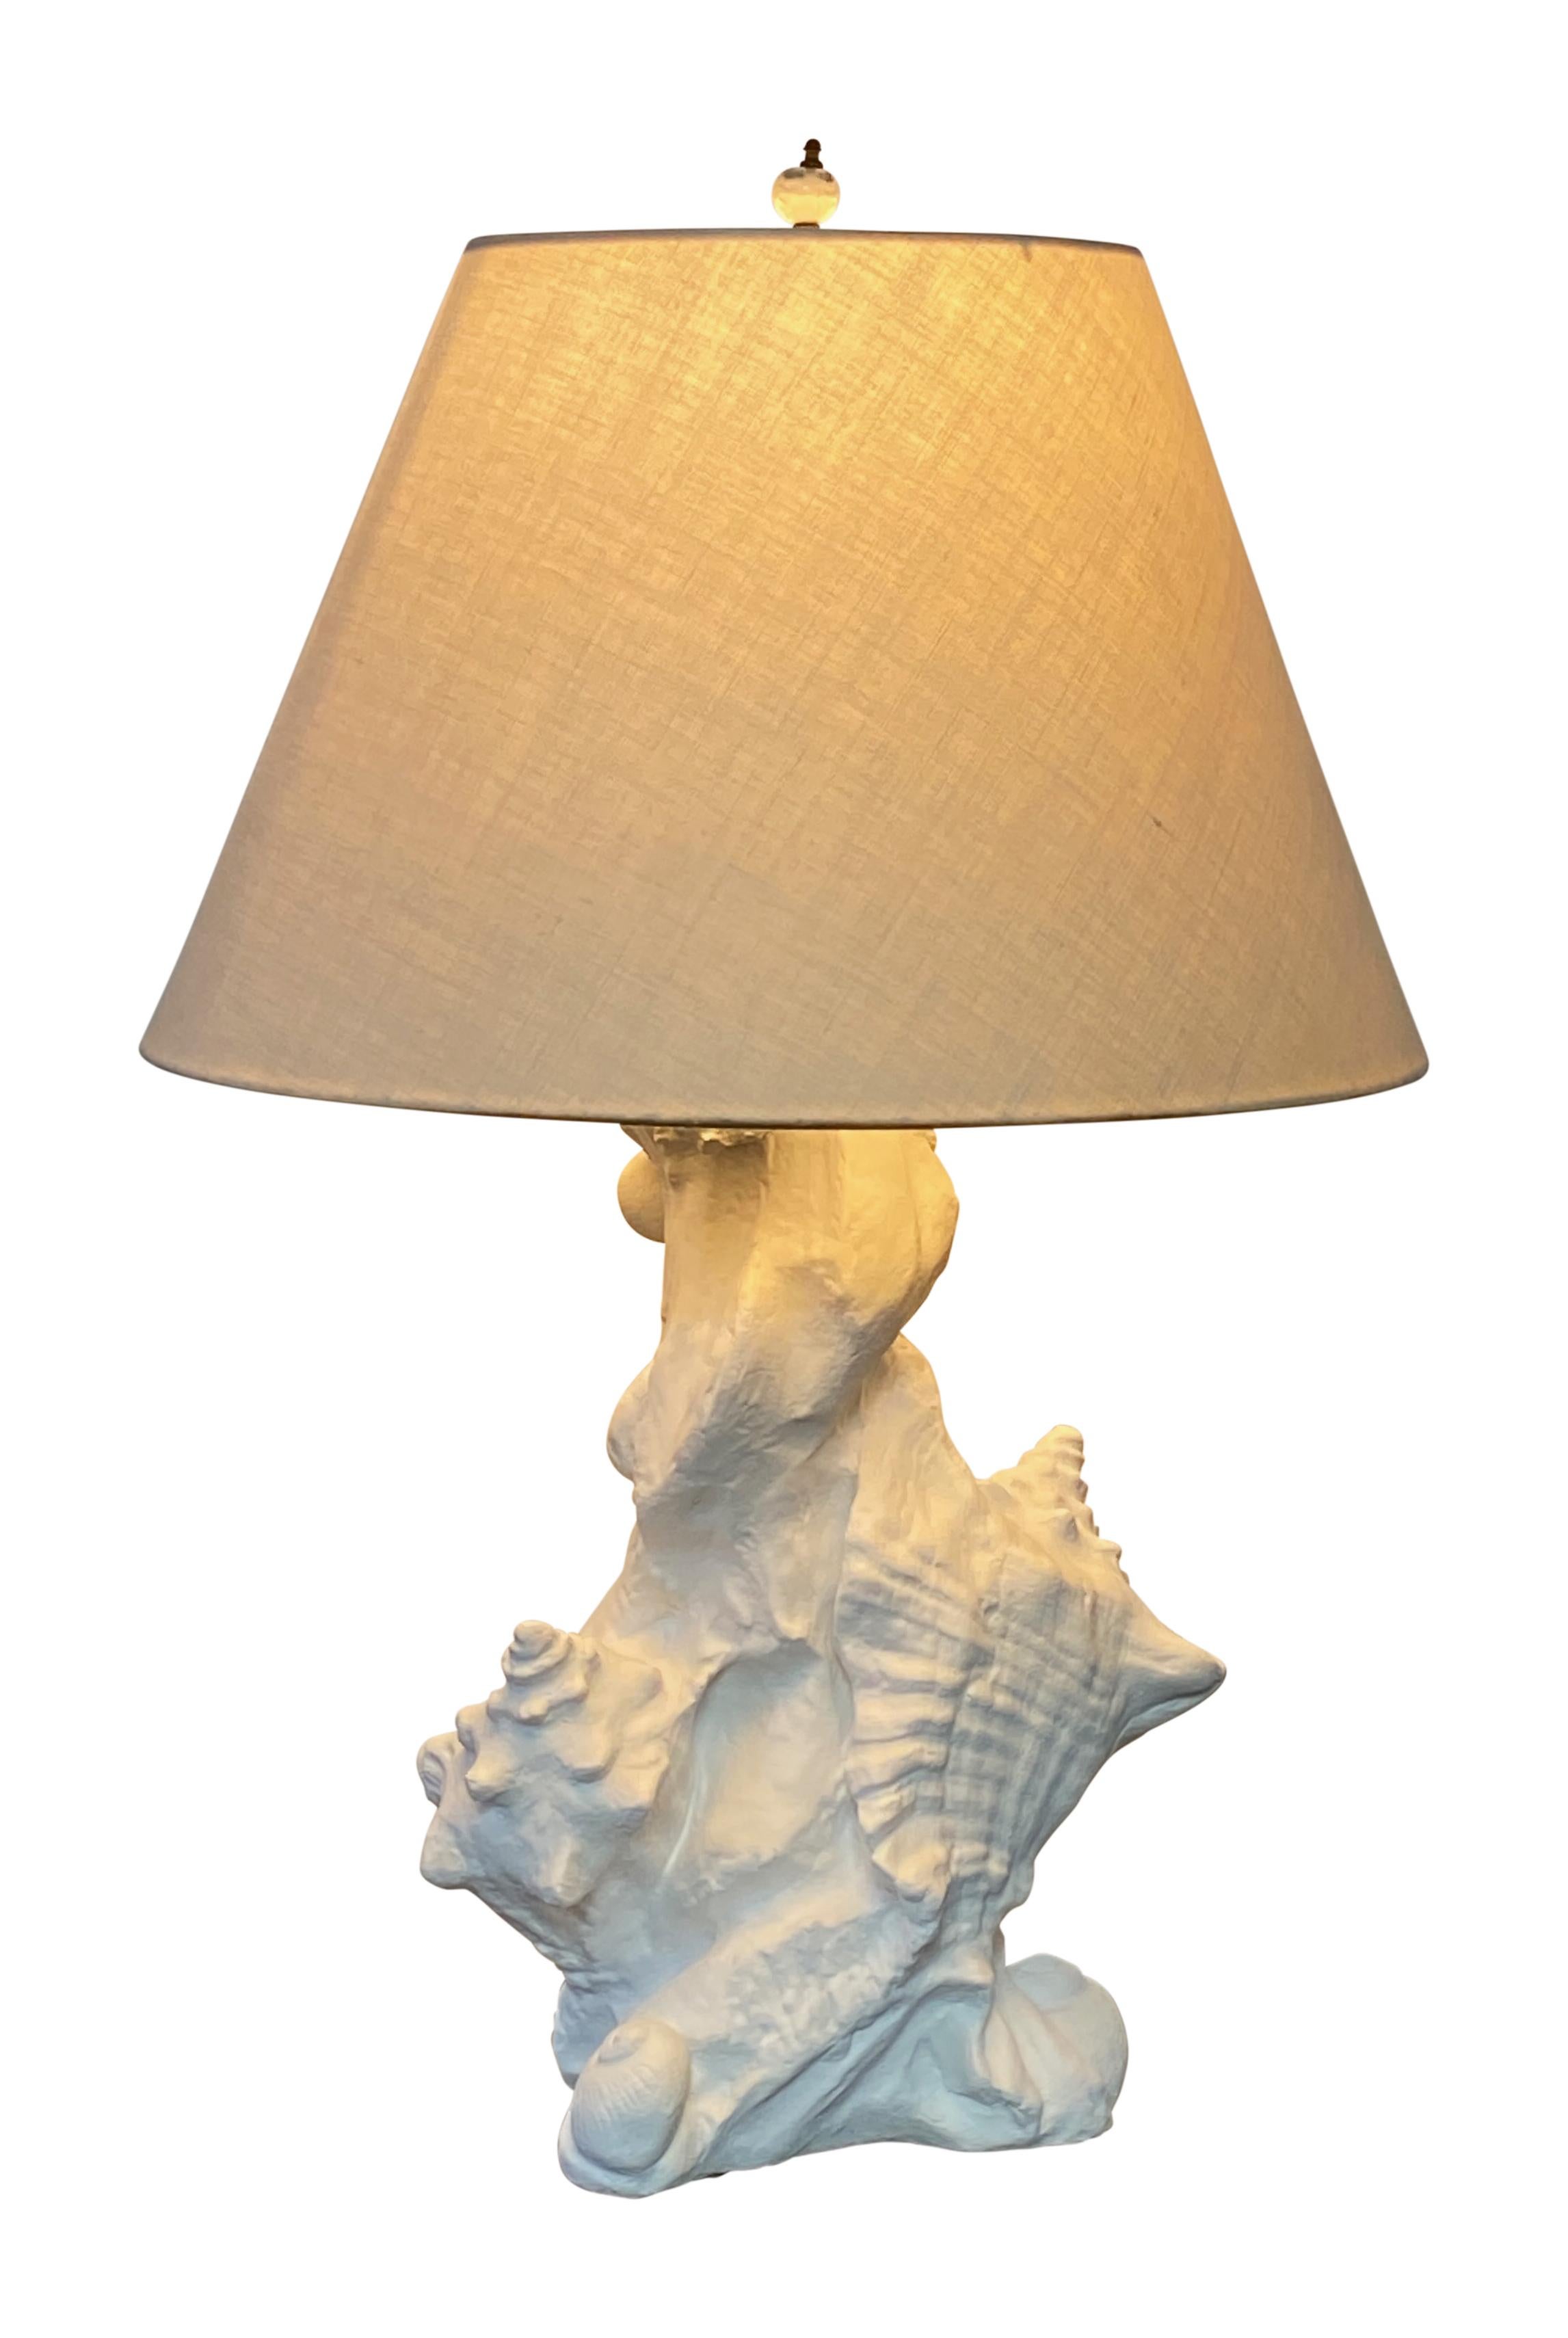 Die skulpturale Muschel-Tischlampe im Stil von Serge Roche stammt aus den 1960er Jahren. Hergestellt aus geformter Gipszusammensetzung.
Perfekter Küsten- oder Palmenstrand-Look.
In ausgezeichnetem Zustand.
Kürzlich neu verkabelt.
Schirm nicht